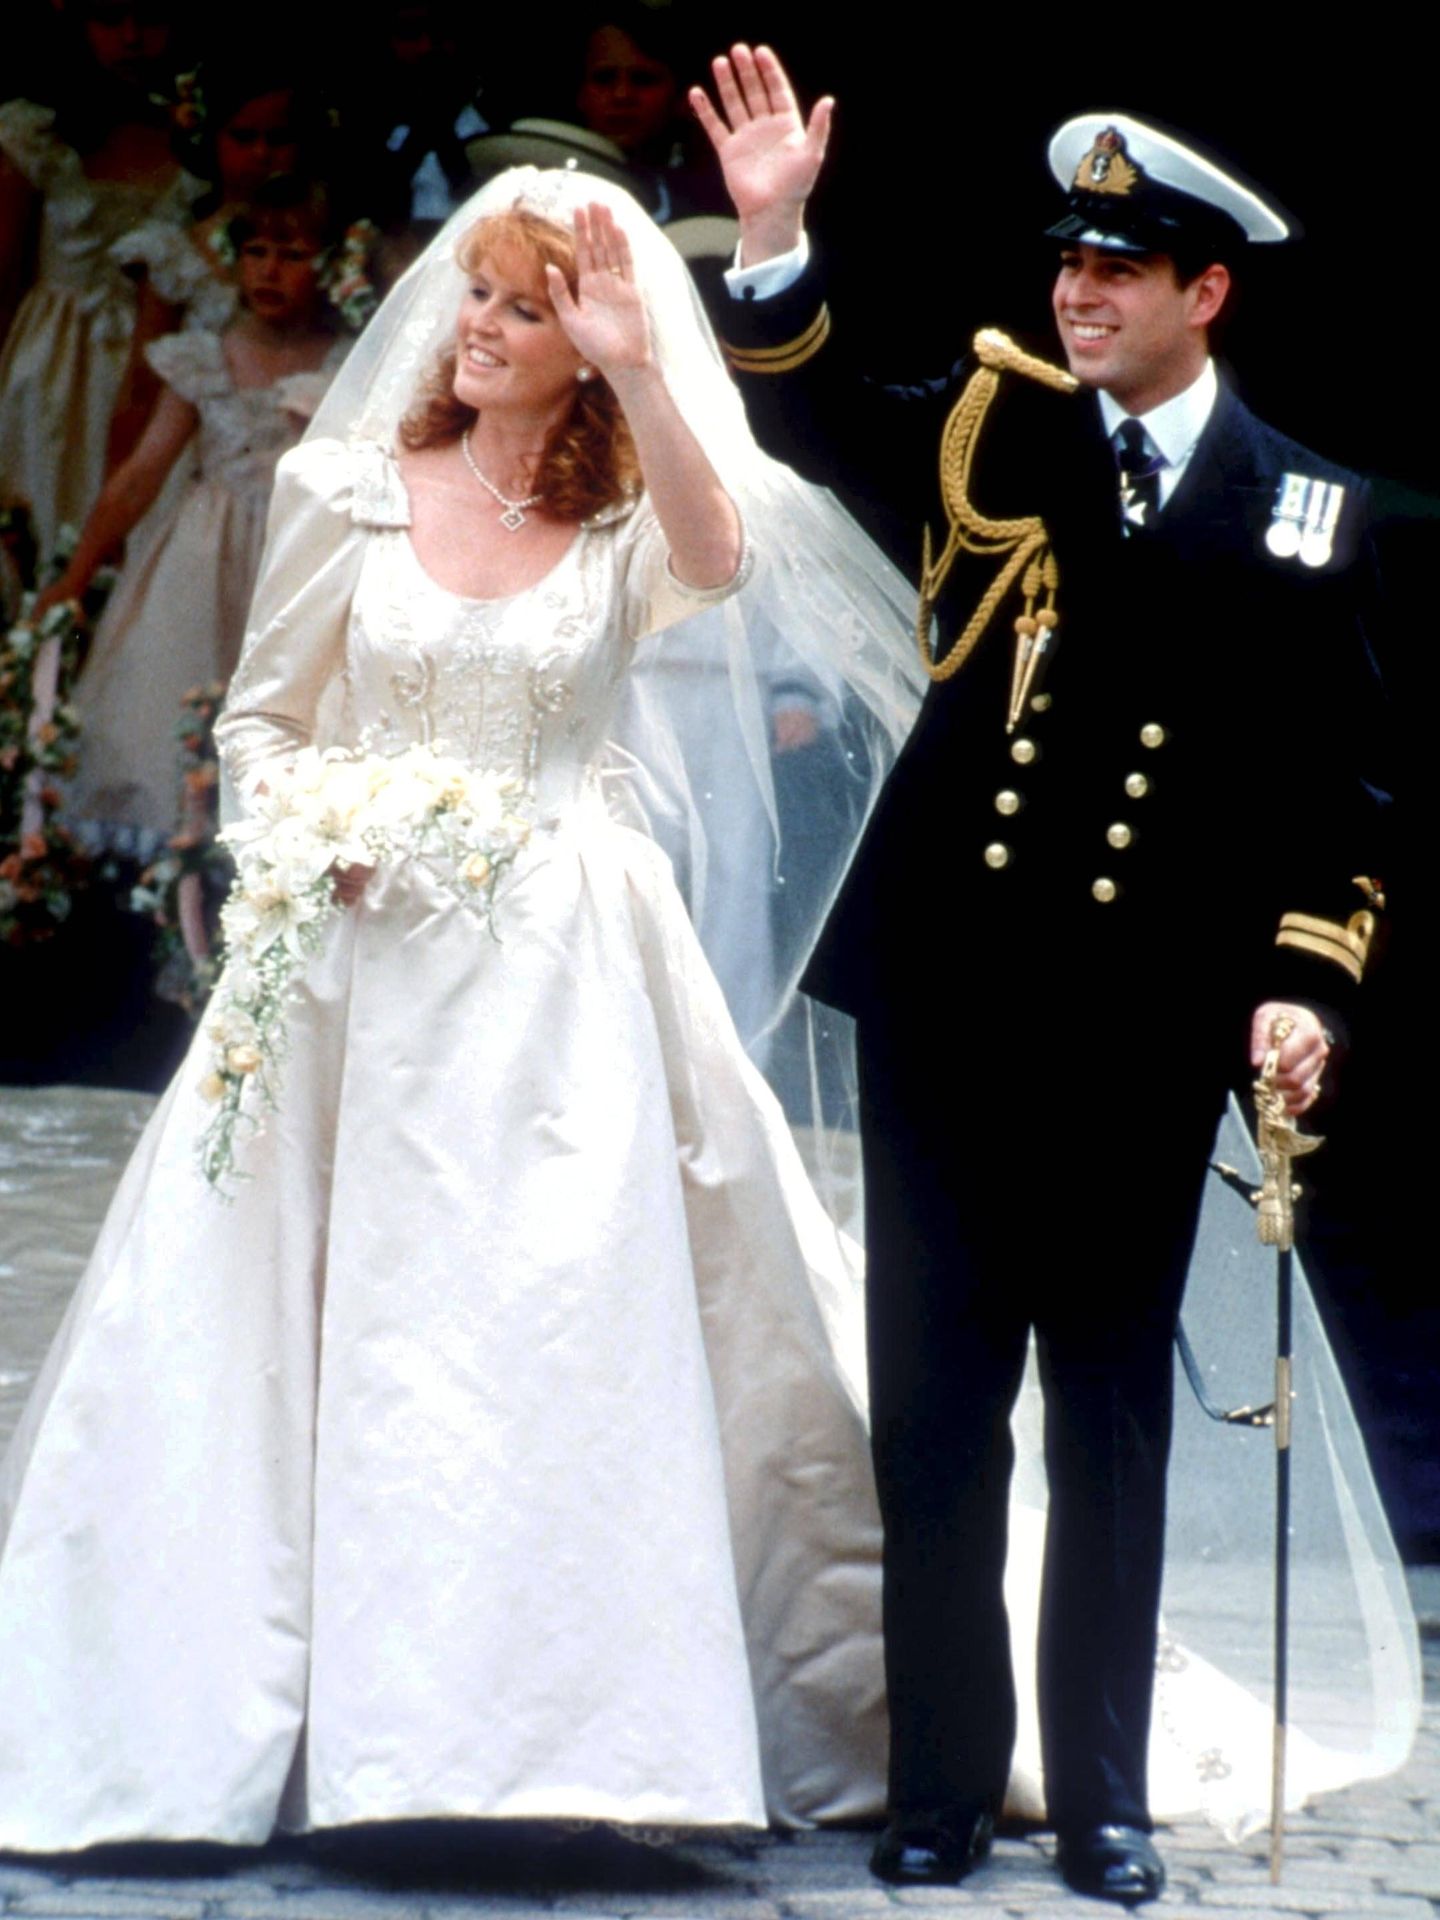 La boda de Sarah Ferguson y el príncipe Andrés. (Cordon Press)